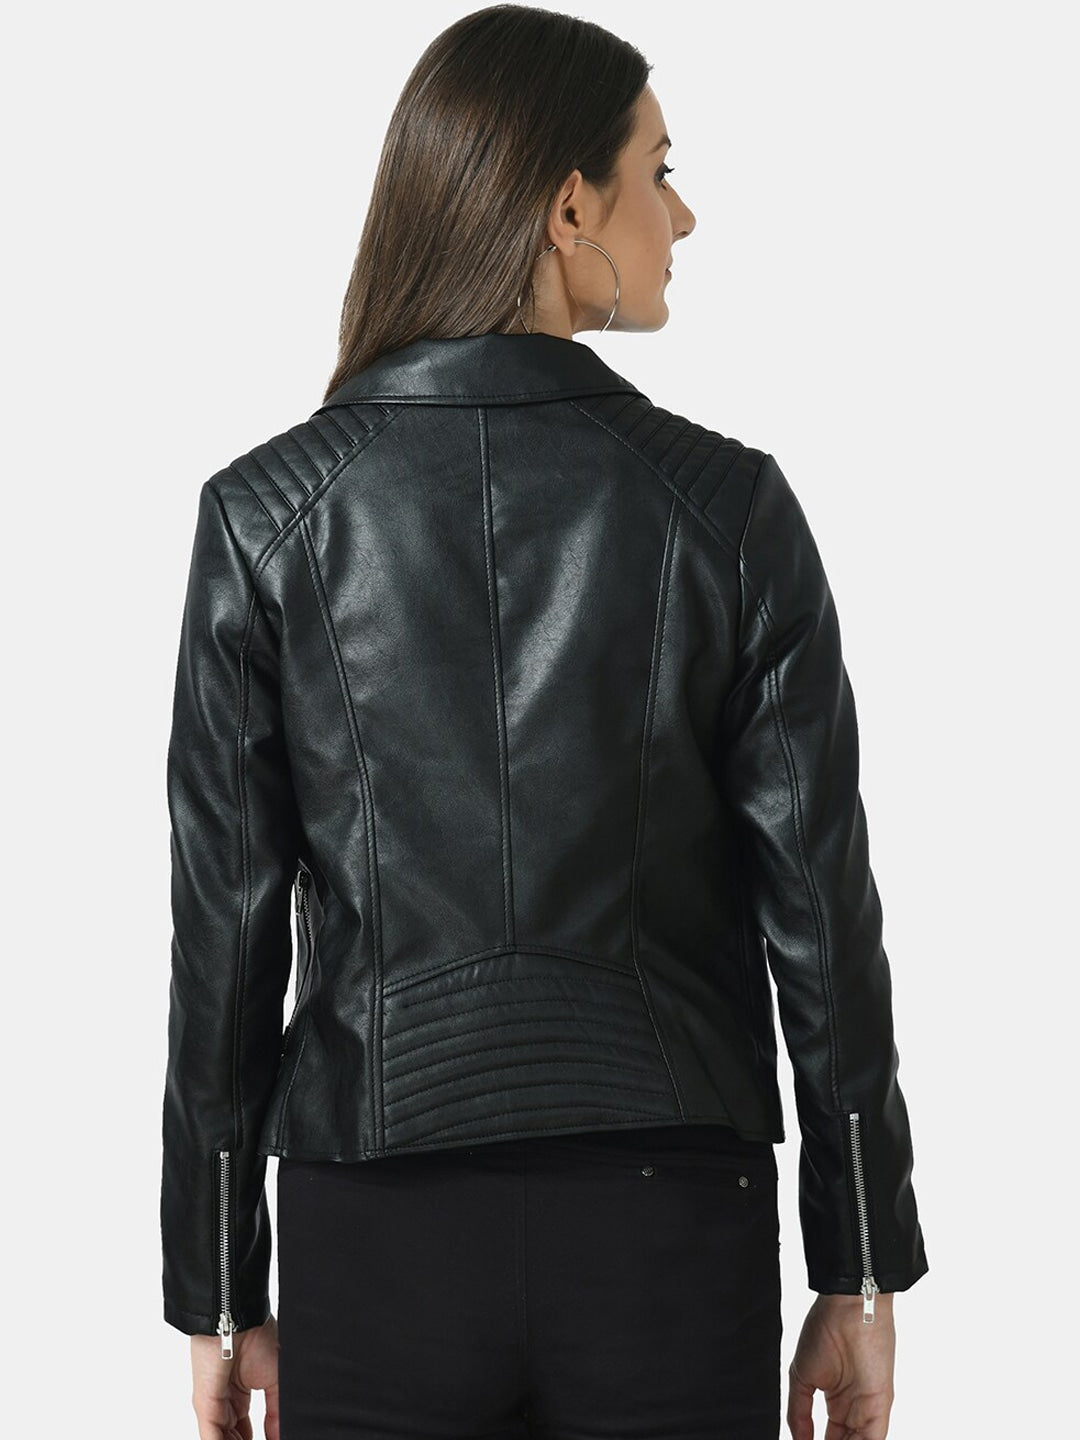 Women Black Lightweight Genuine Leather Crop Jacket | QAWACH